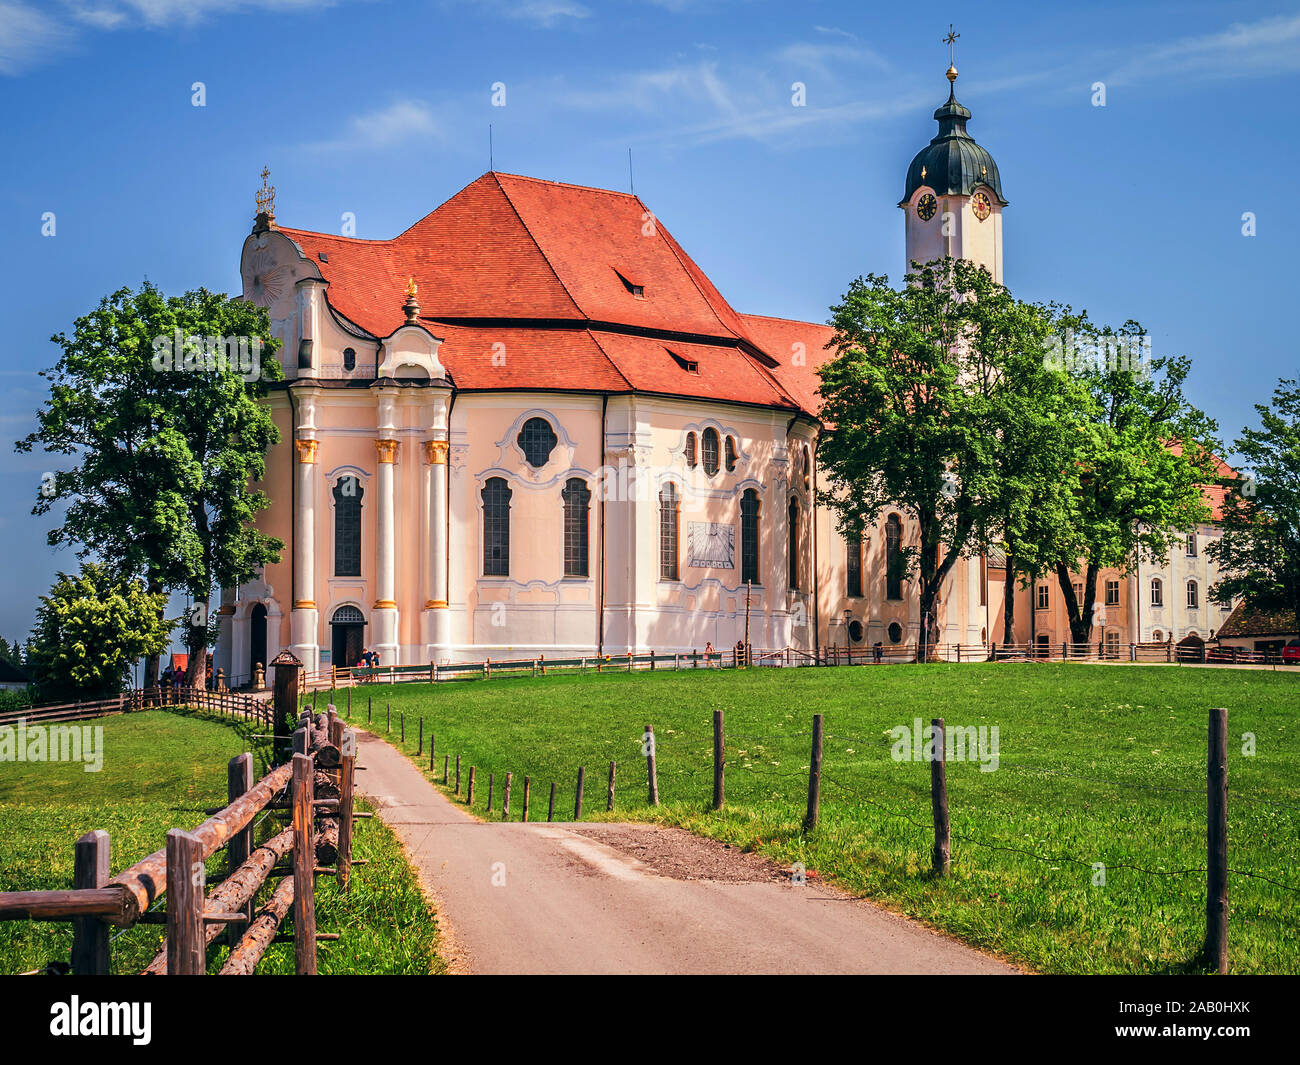 Ein Blick auf die beruehmte Wieskirche in Wies in Bayern, Deutschland Stock Photo